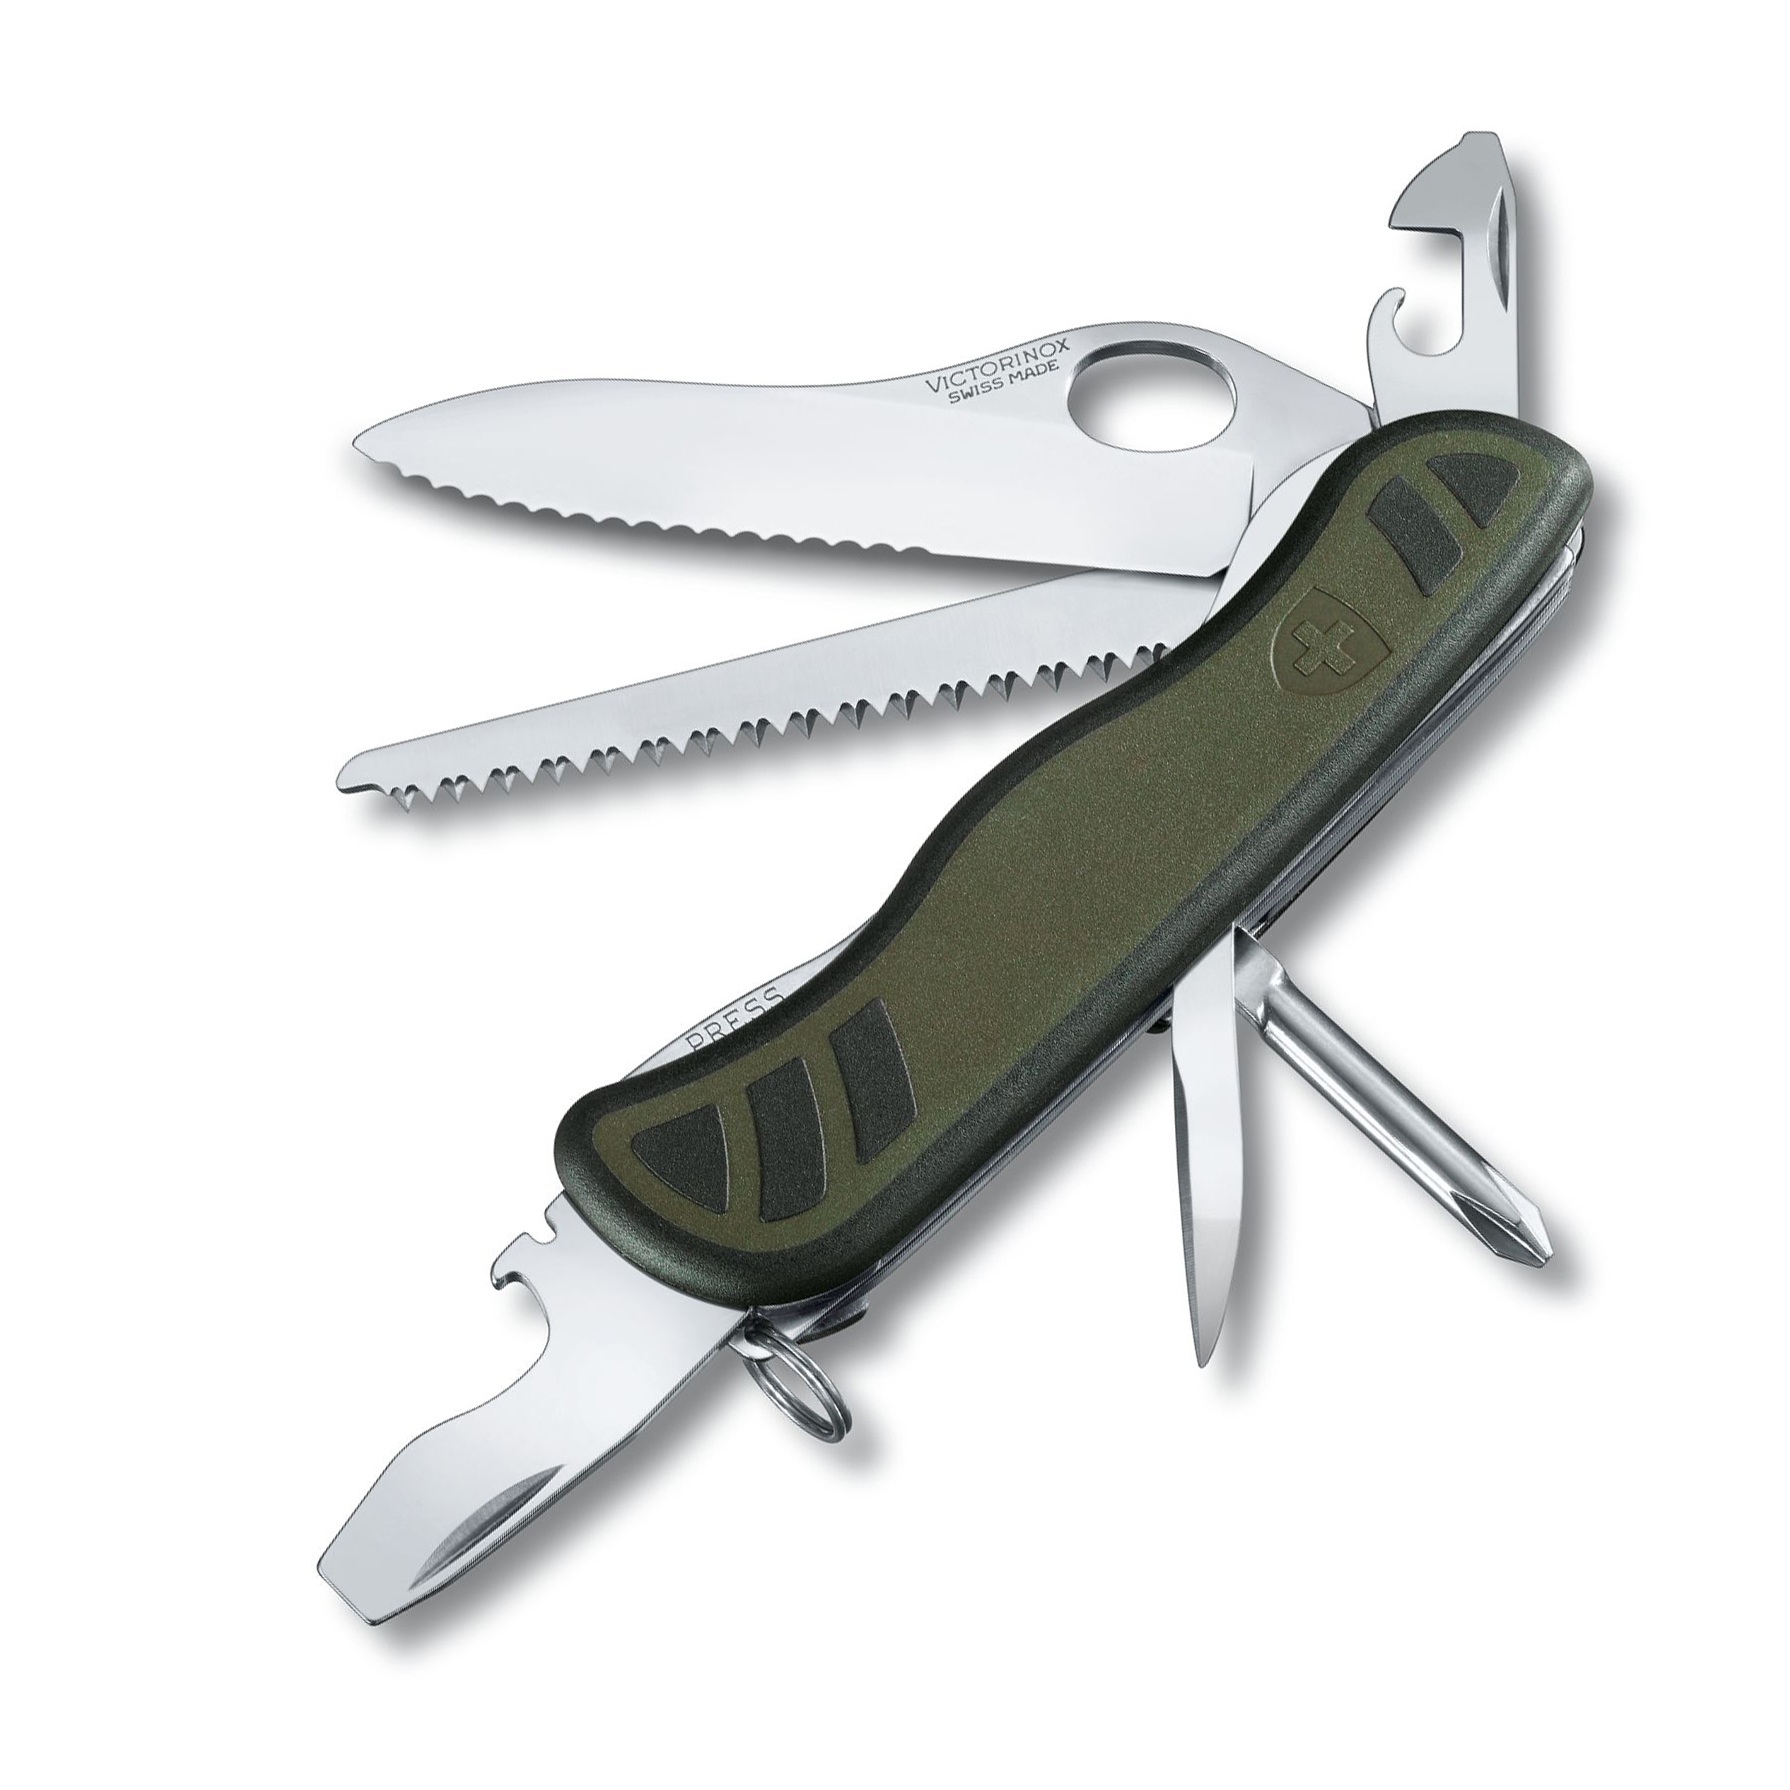 Нож перочинный Victorinox Military, сталь X50CrMoV15, рукоять нейлон, зеленый нож перочинный victorinox classic alox 58 мм 7 функций персиковый